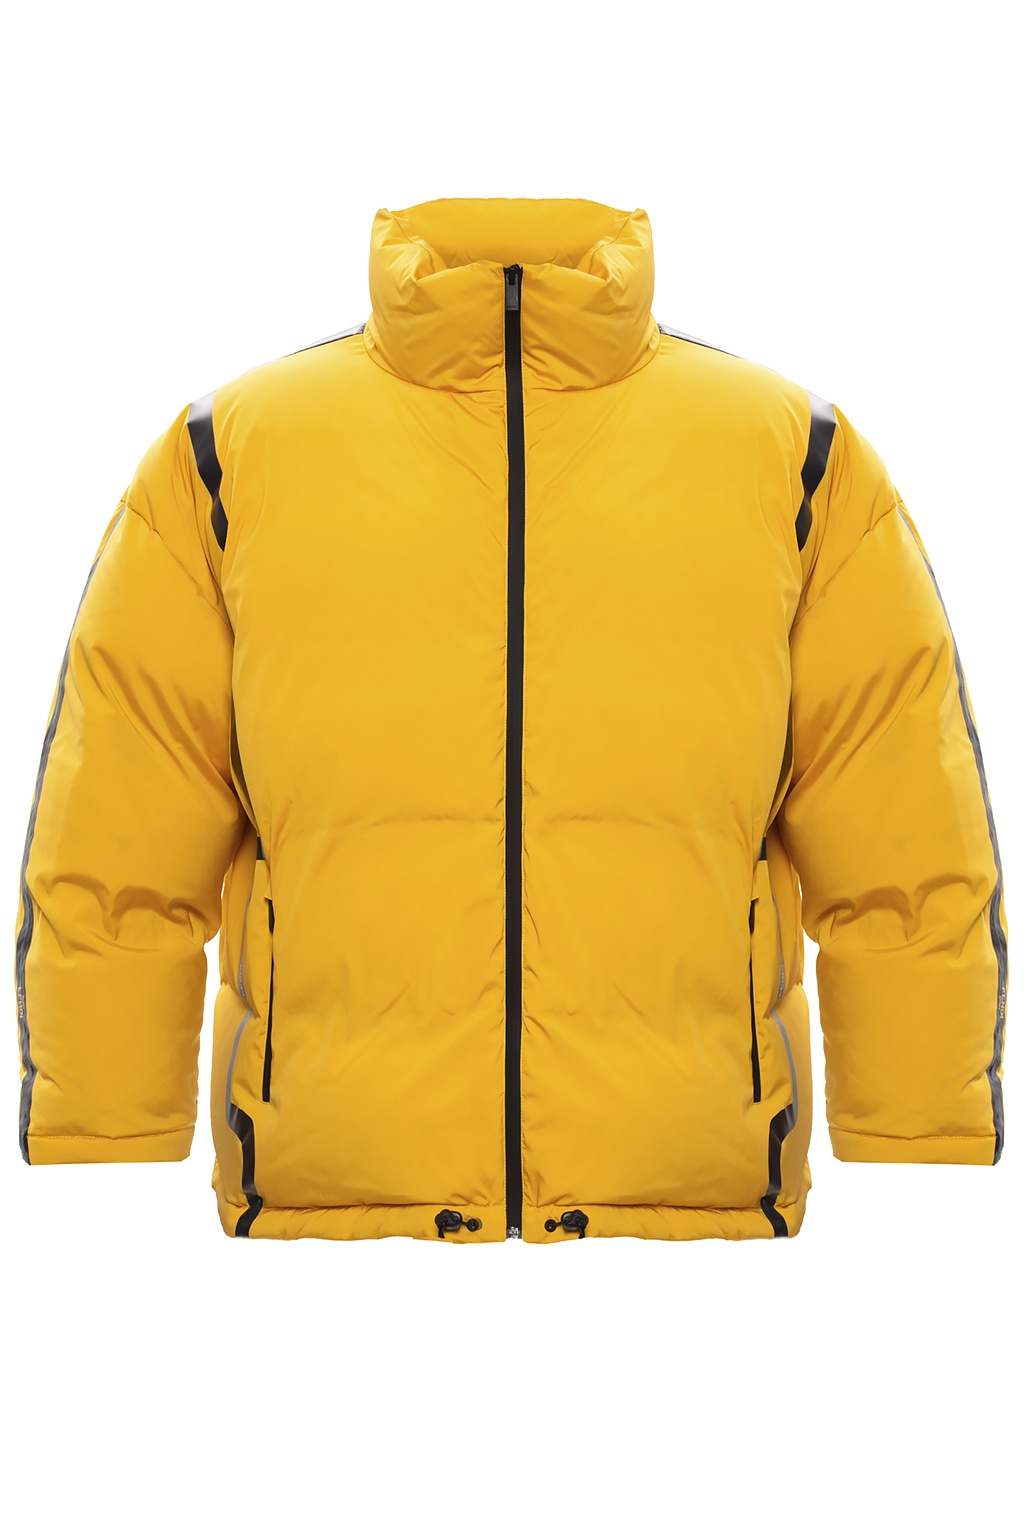 fendi yellow jacket